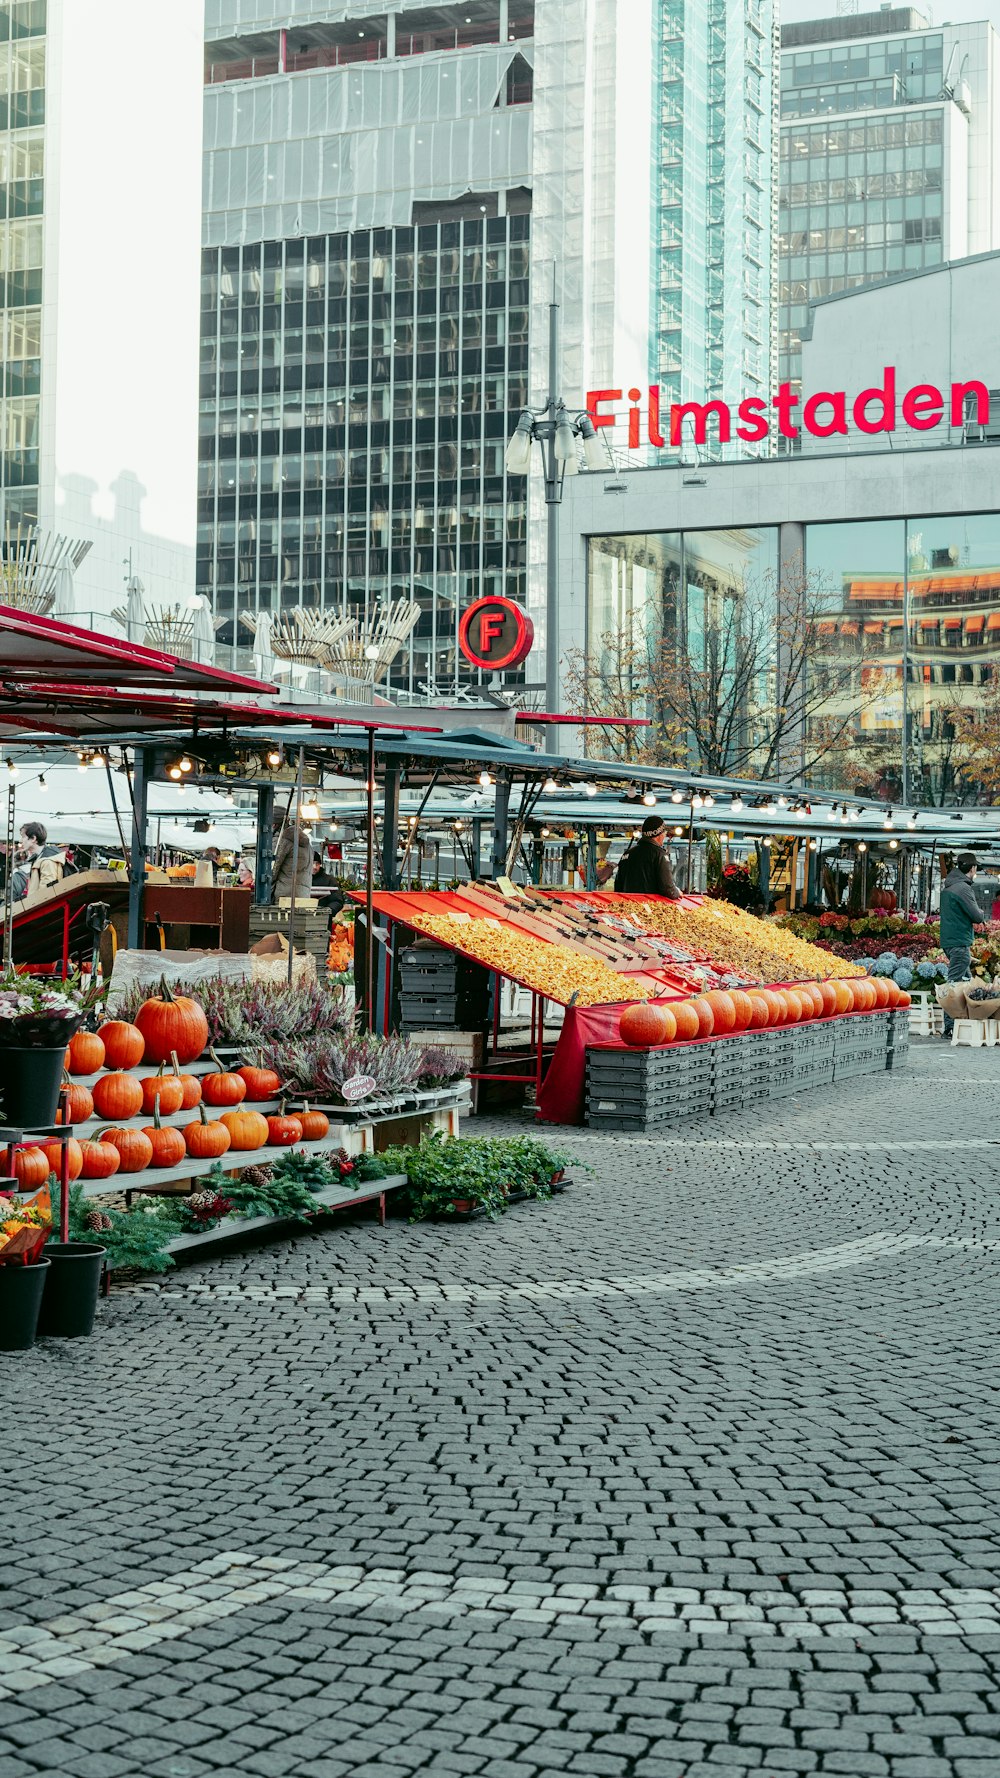 un marché en plein air avec beaucoup de fruits et légumes